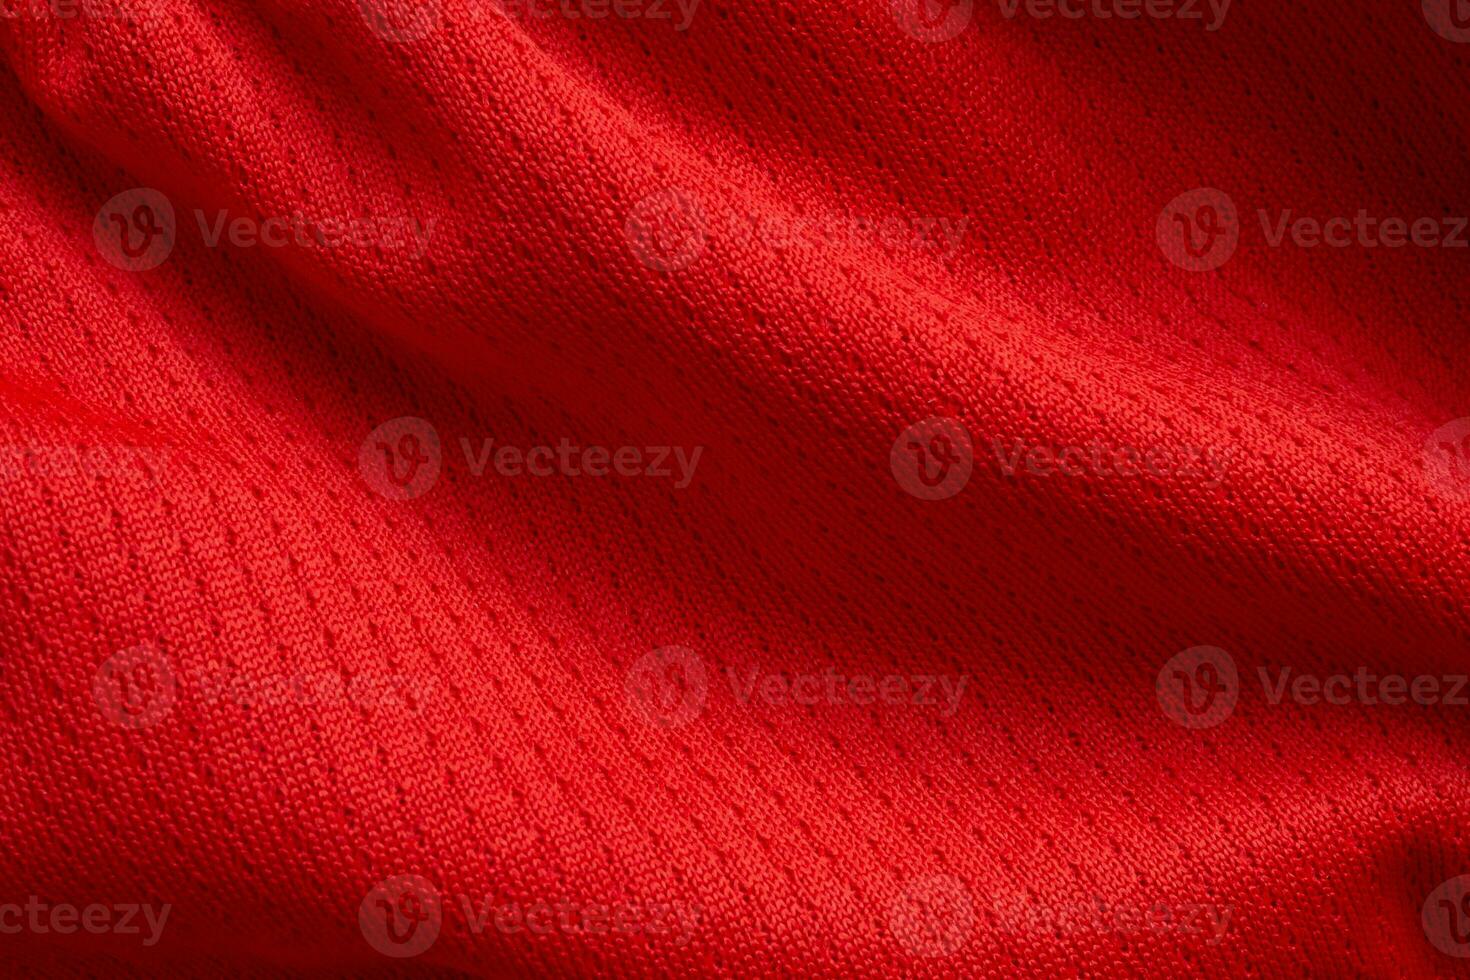 roupas esportivas vermelhas tecido camisa de futebol jersey fundo de textura foto